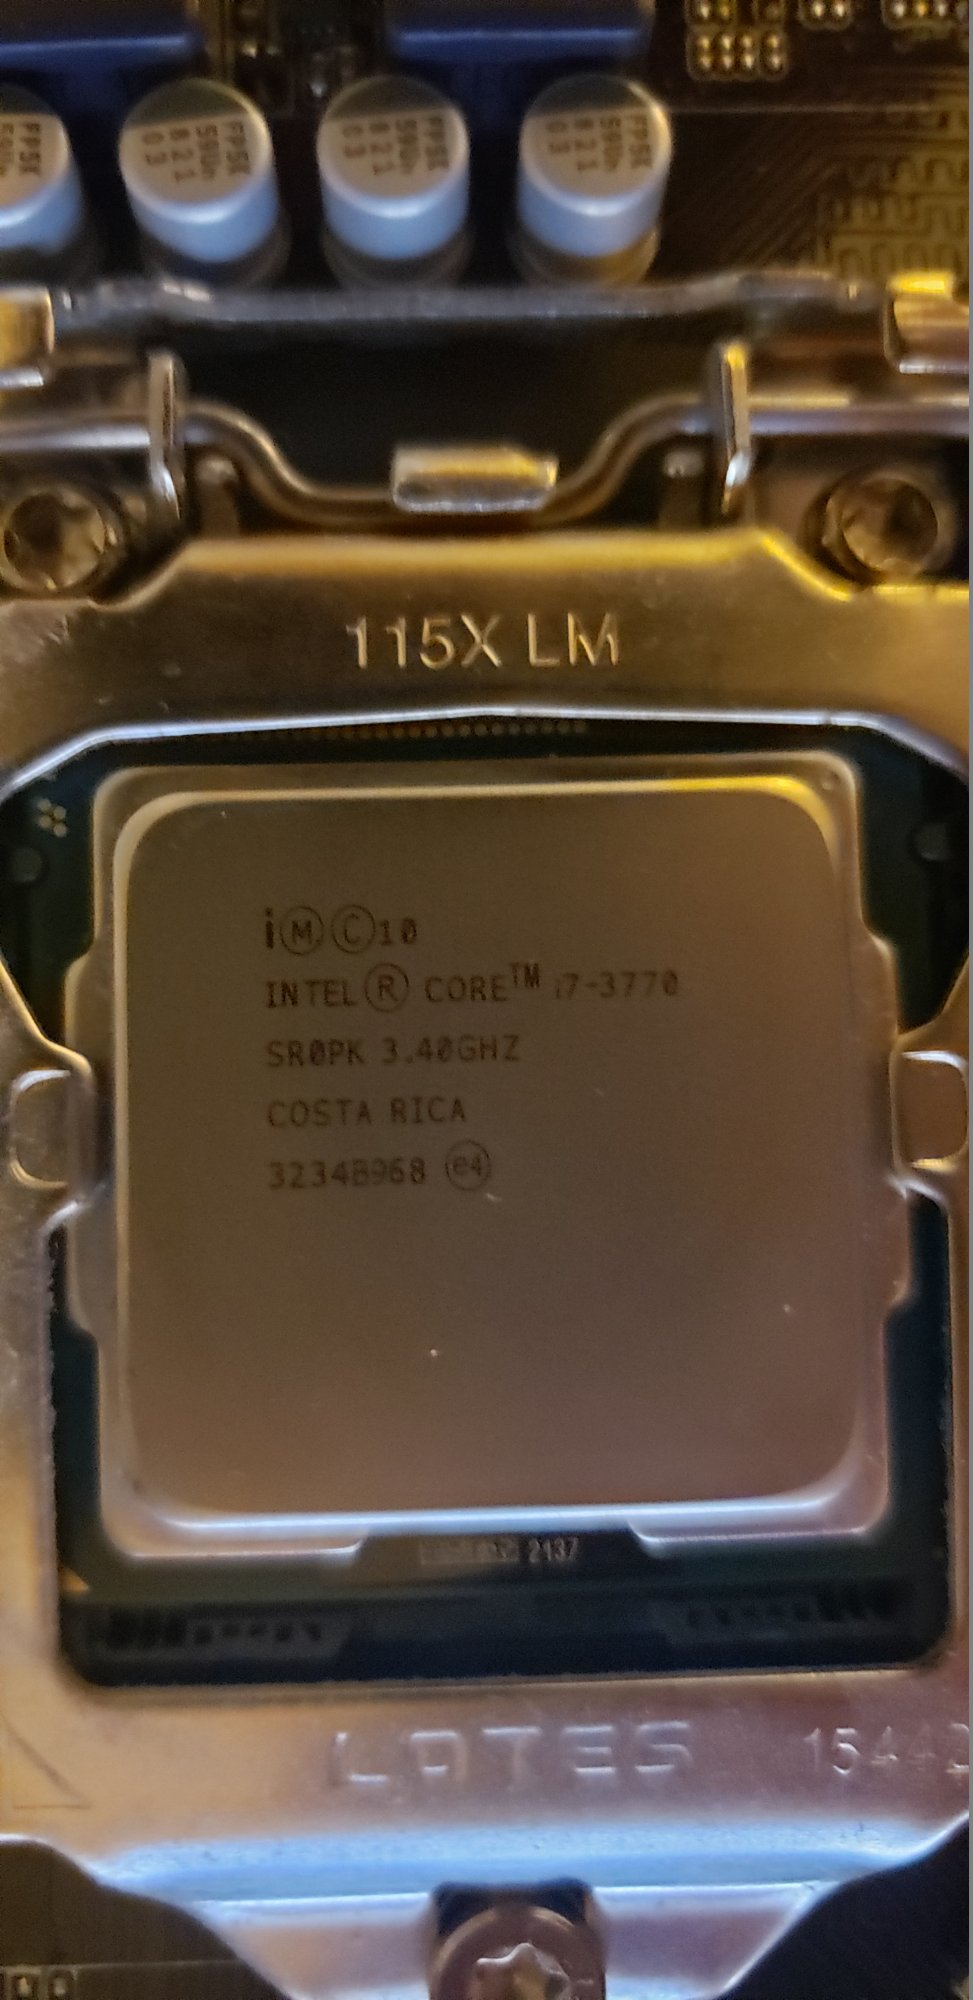 WTS Intel Core i7-3770 LGA 1155 , Asus P8H61-M LE/CSM, 16GB (2 x